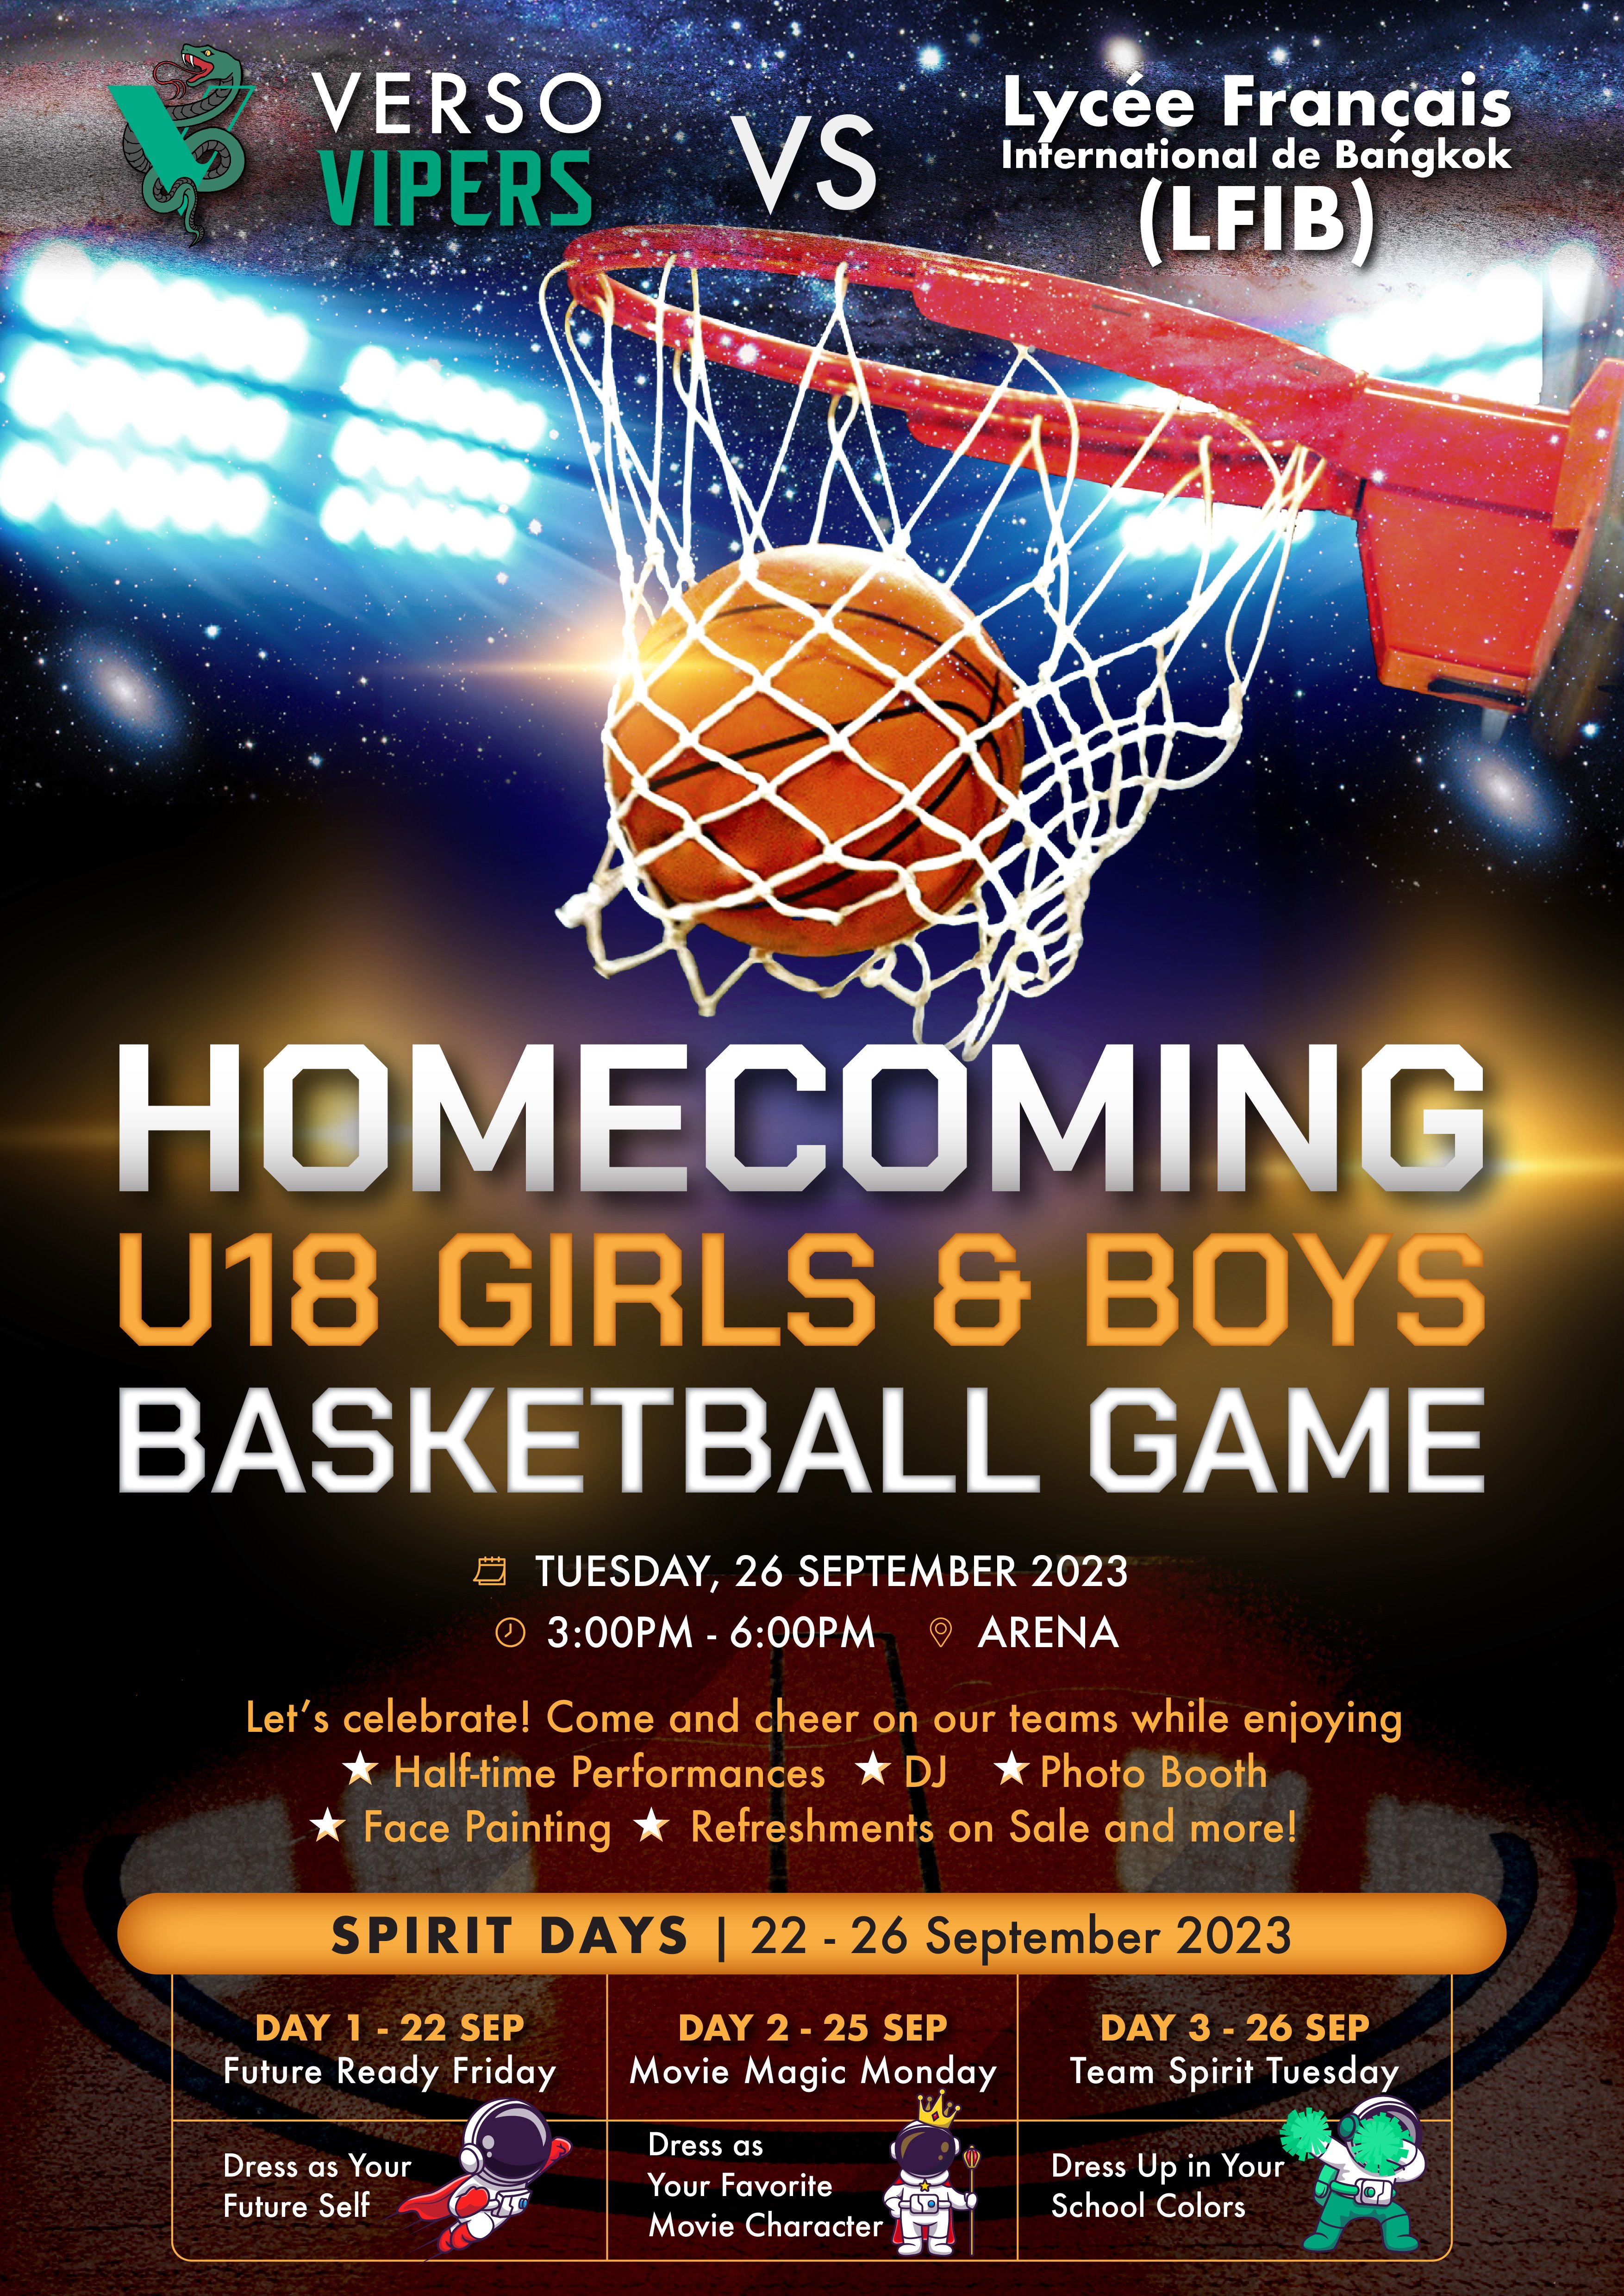 Homecoming U18 Basketball